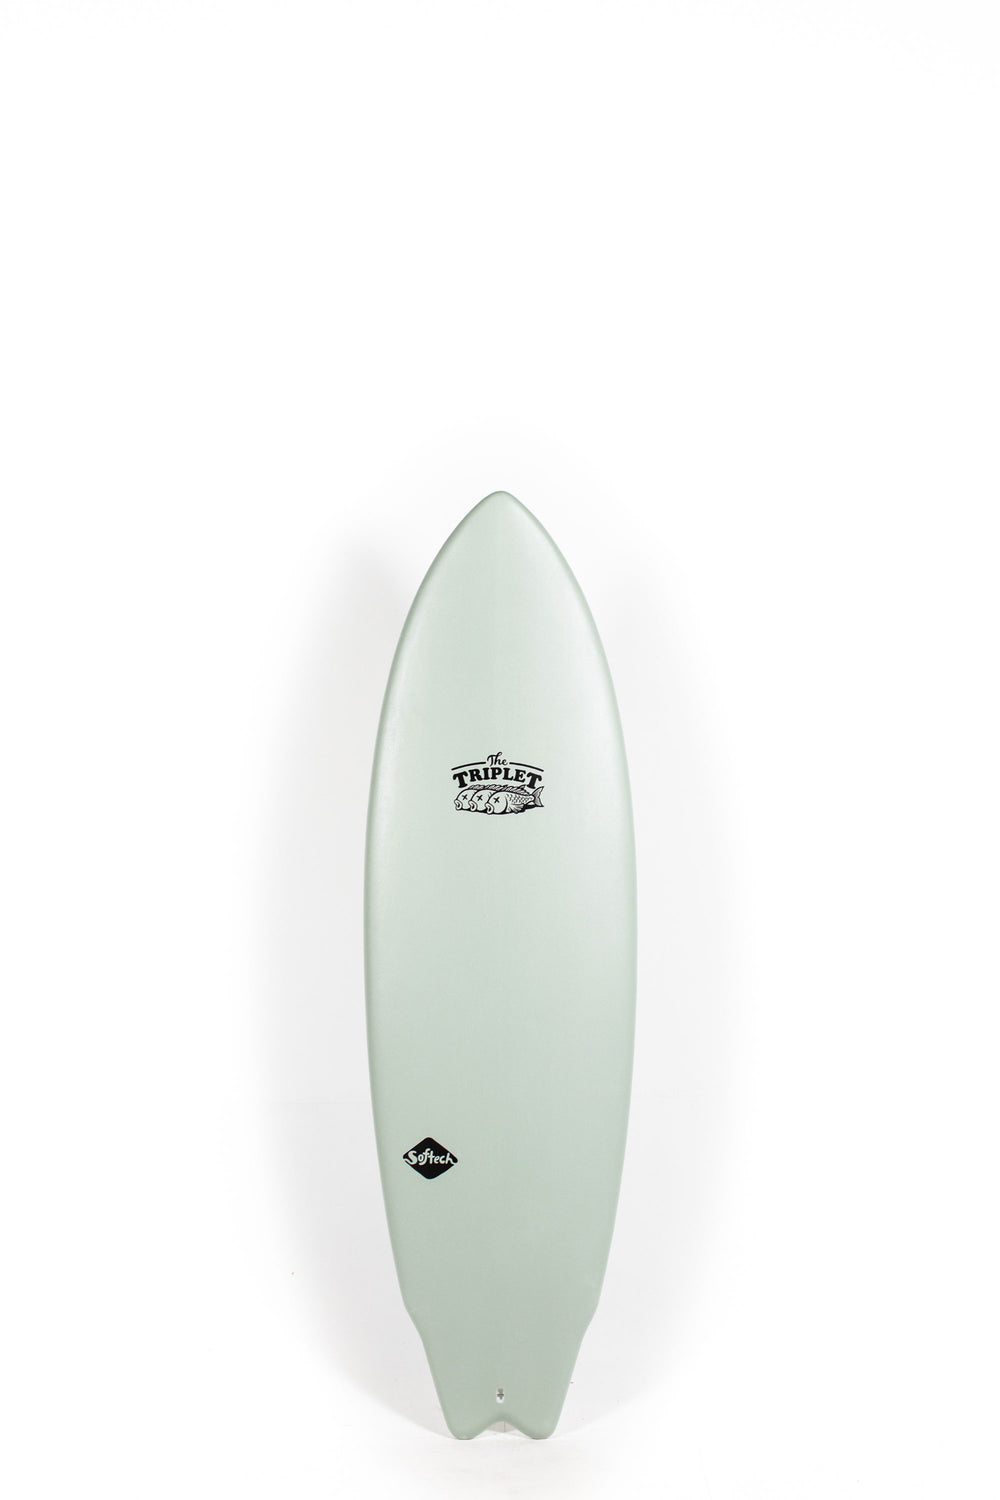 Pukas Surf Shop - SOFTECH - THE TRIPLET 6'0